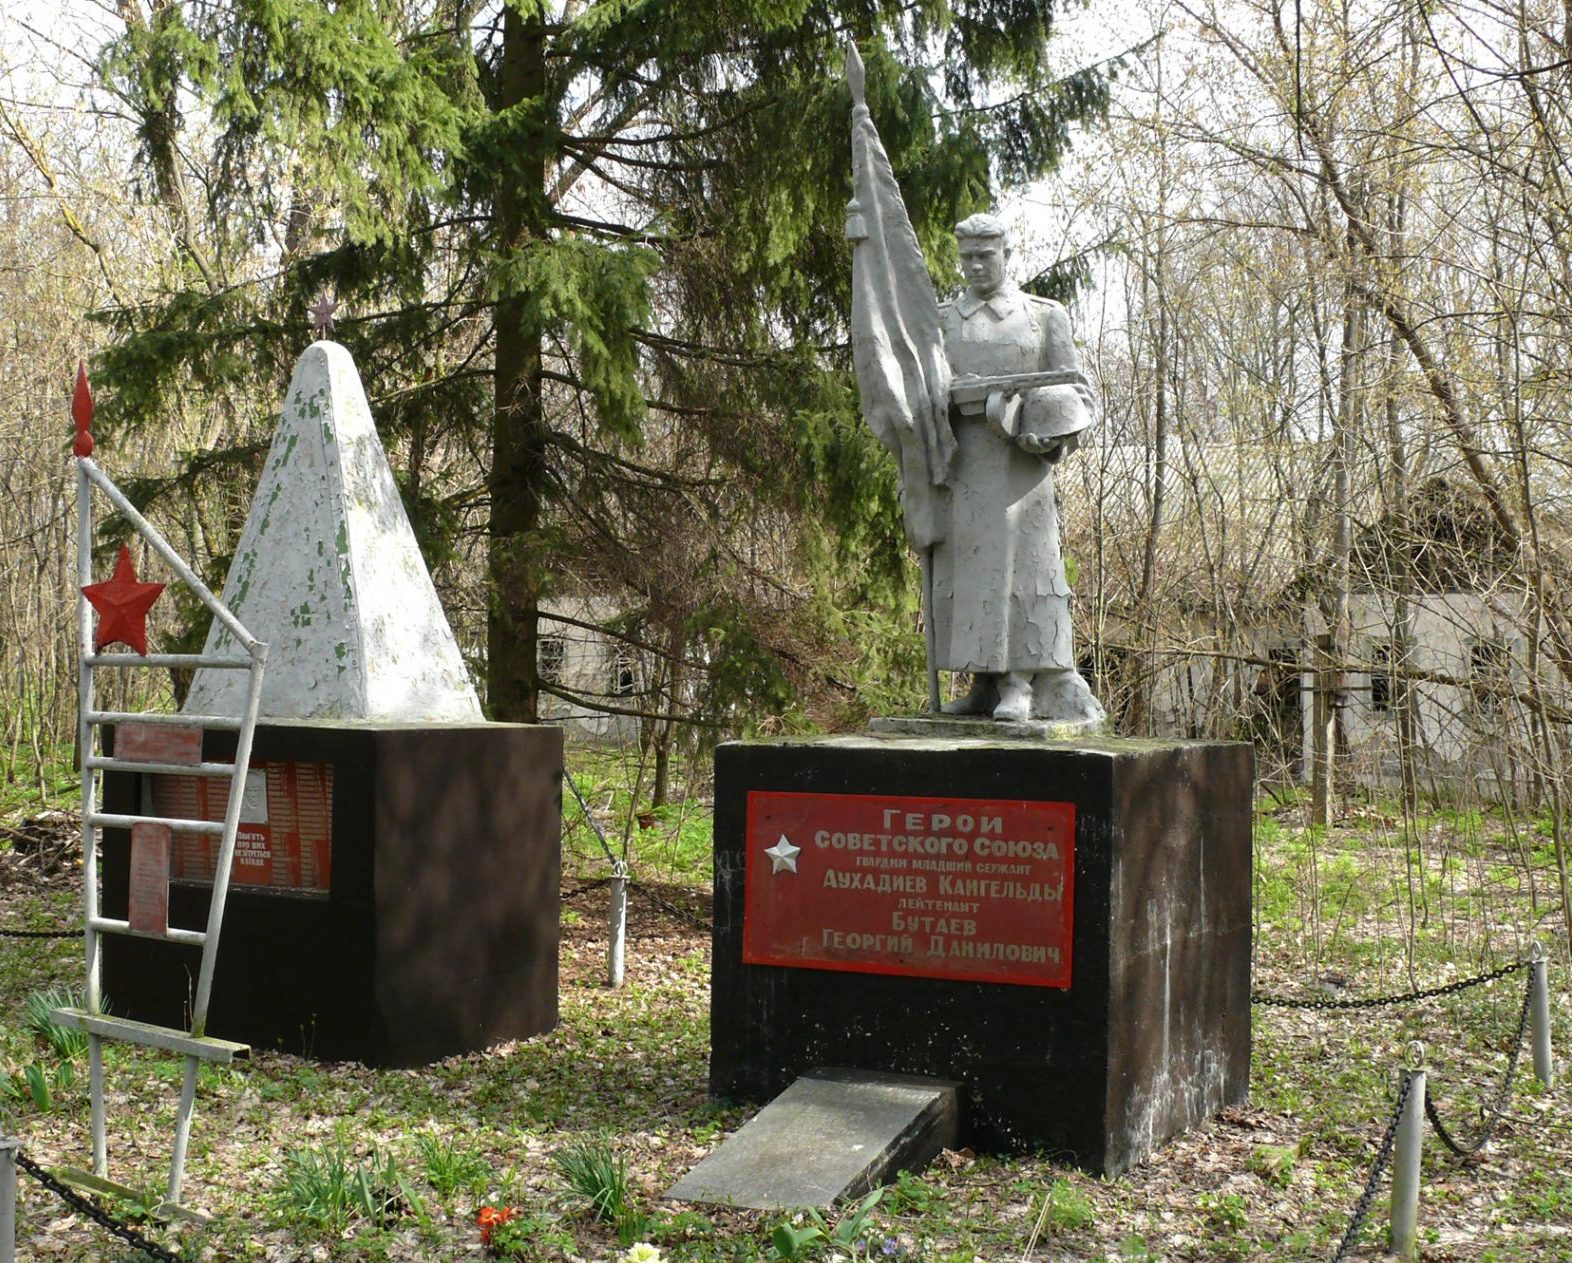 с. Парышев, Чернобыльская зона отчуждения. Братская могила воинов, погибших в годы войны. Здесь захоронены Герои Советского Союза Аухадиев Кайгельды и Георгий Бутаев.